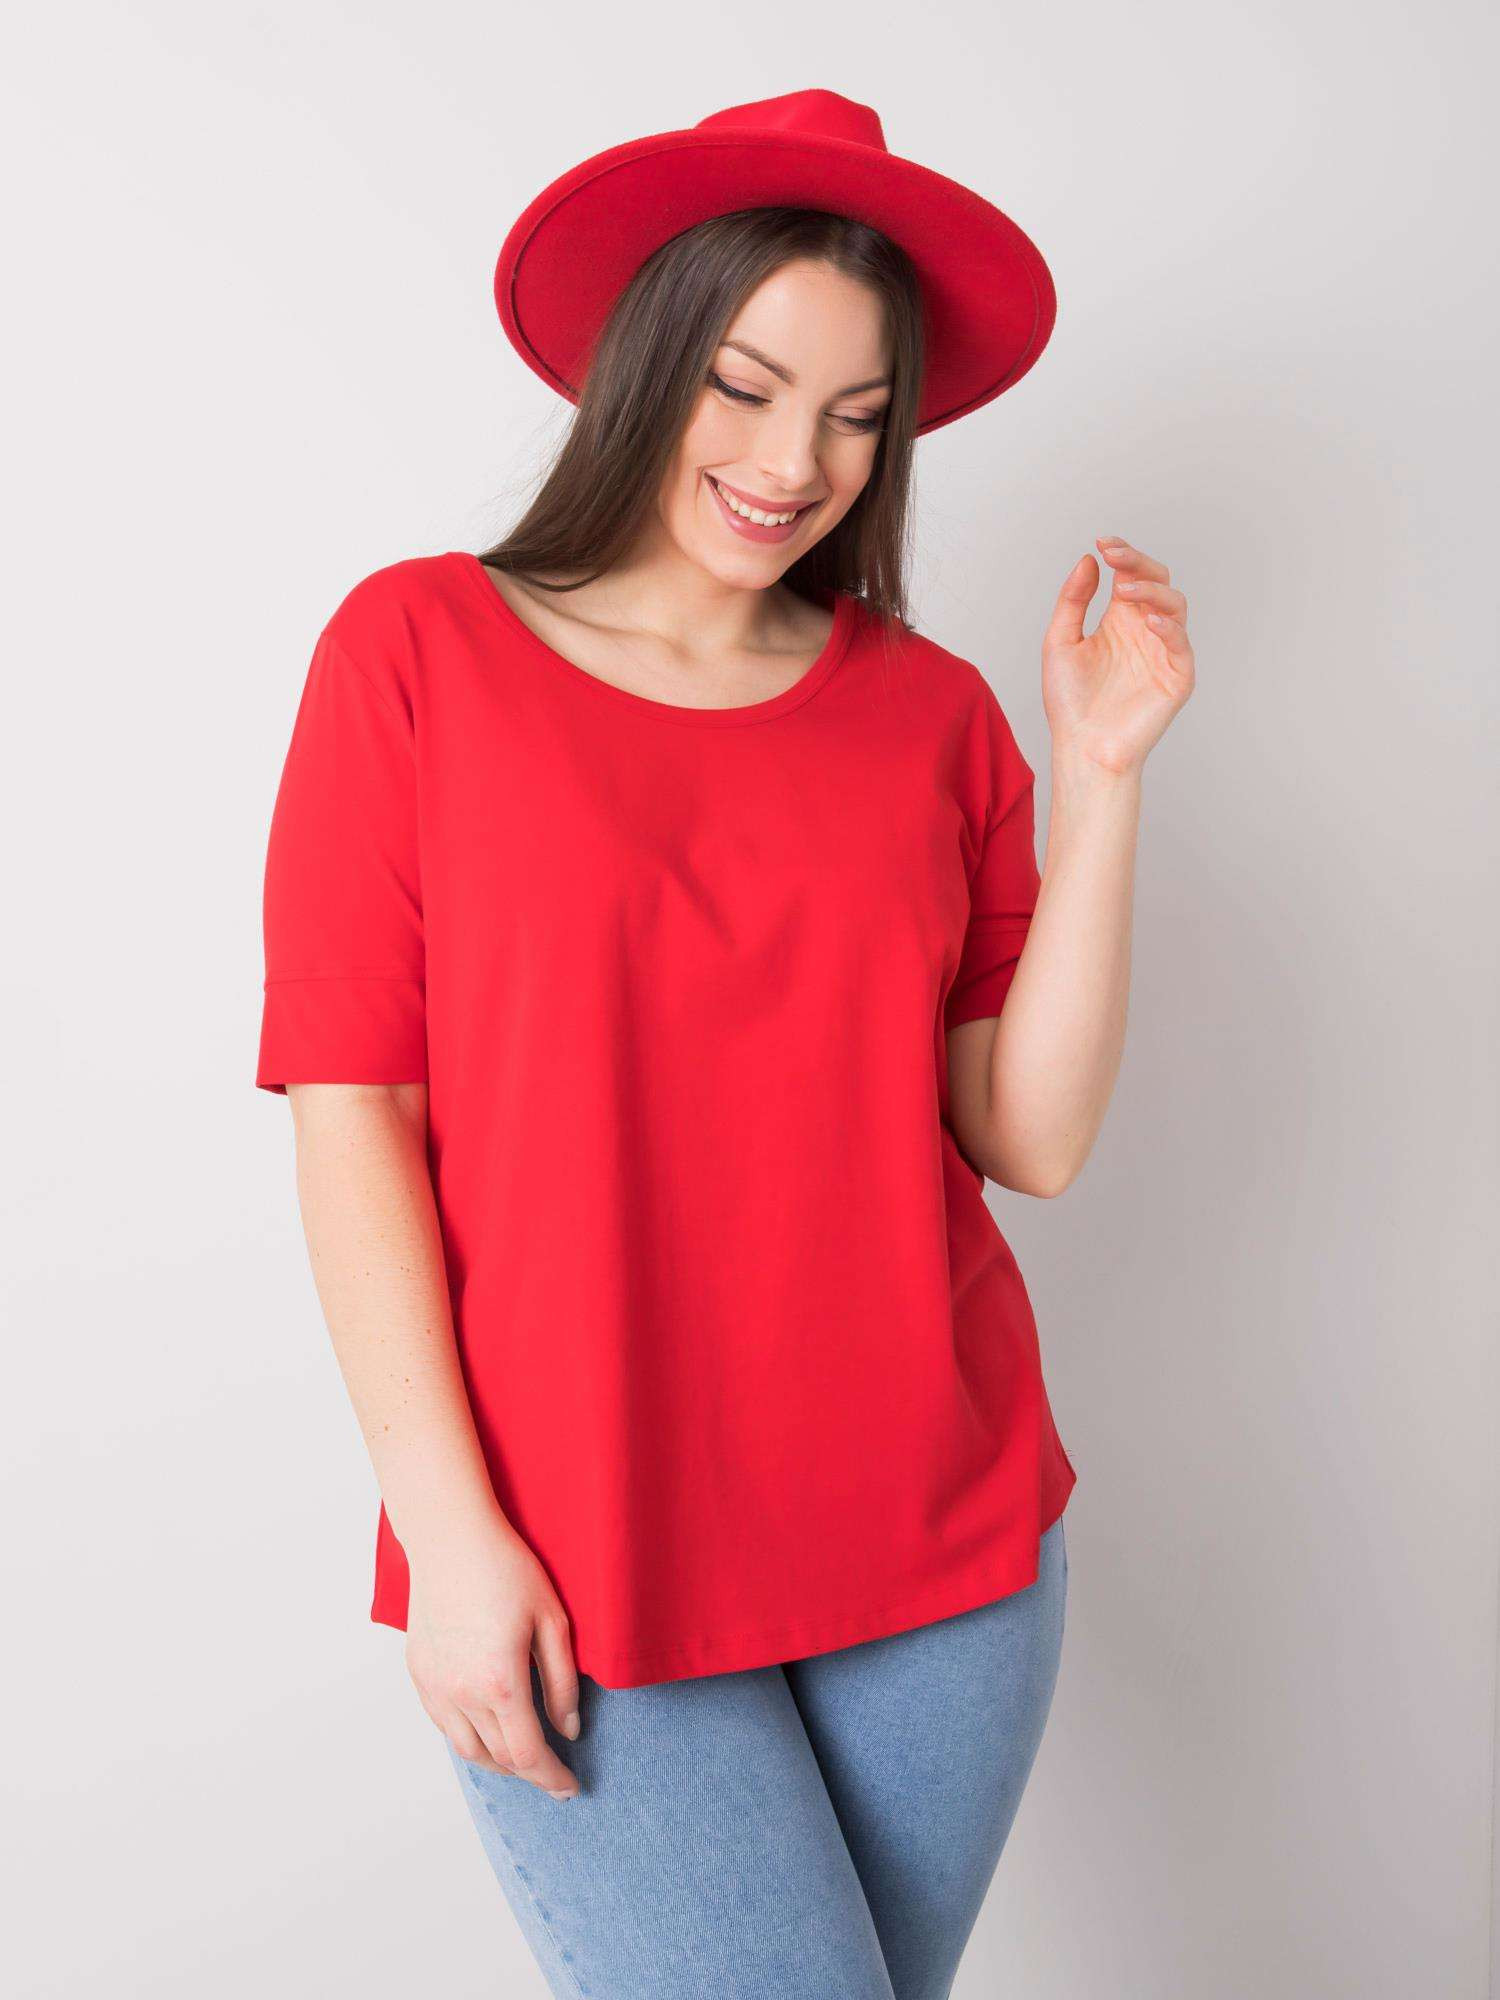 Dámské červené bavlněné tričko nadměrné velikosti 4XL